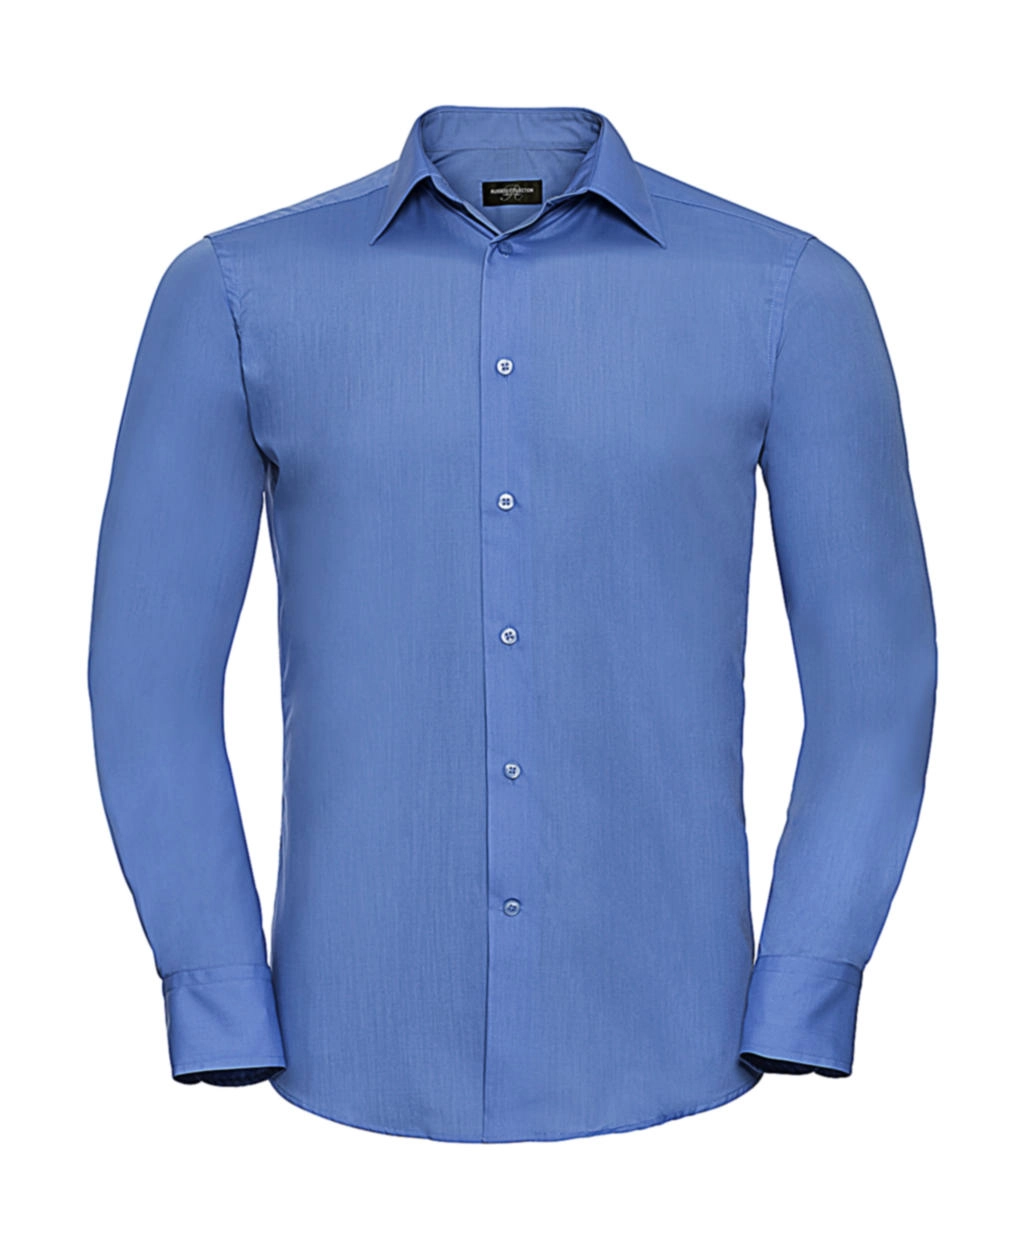 Tailored Poplin Shirt LS zum Besticken und Bedrucken in der Farbe Corporate Blue mit Ihren Logo, Schriftzug oder Motiv.